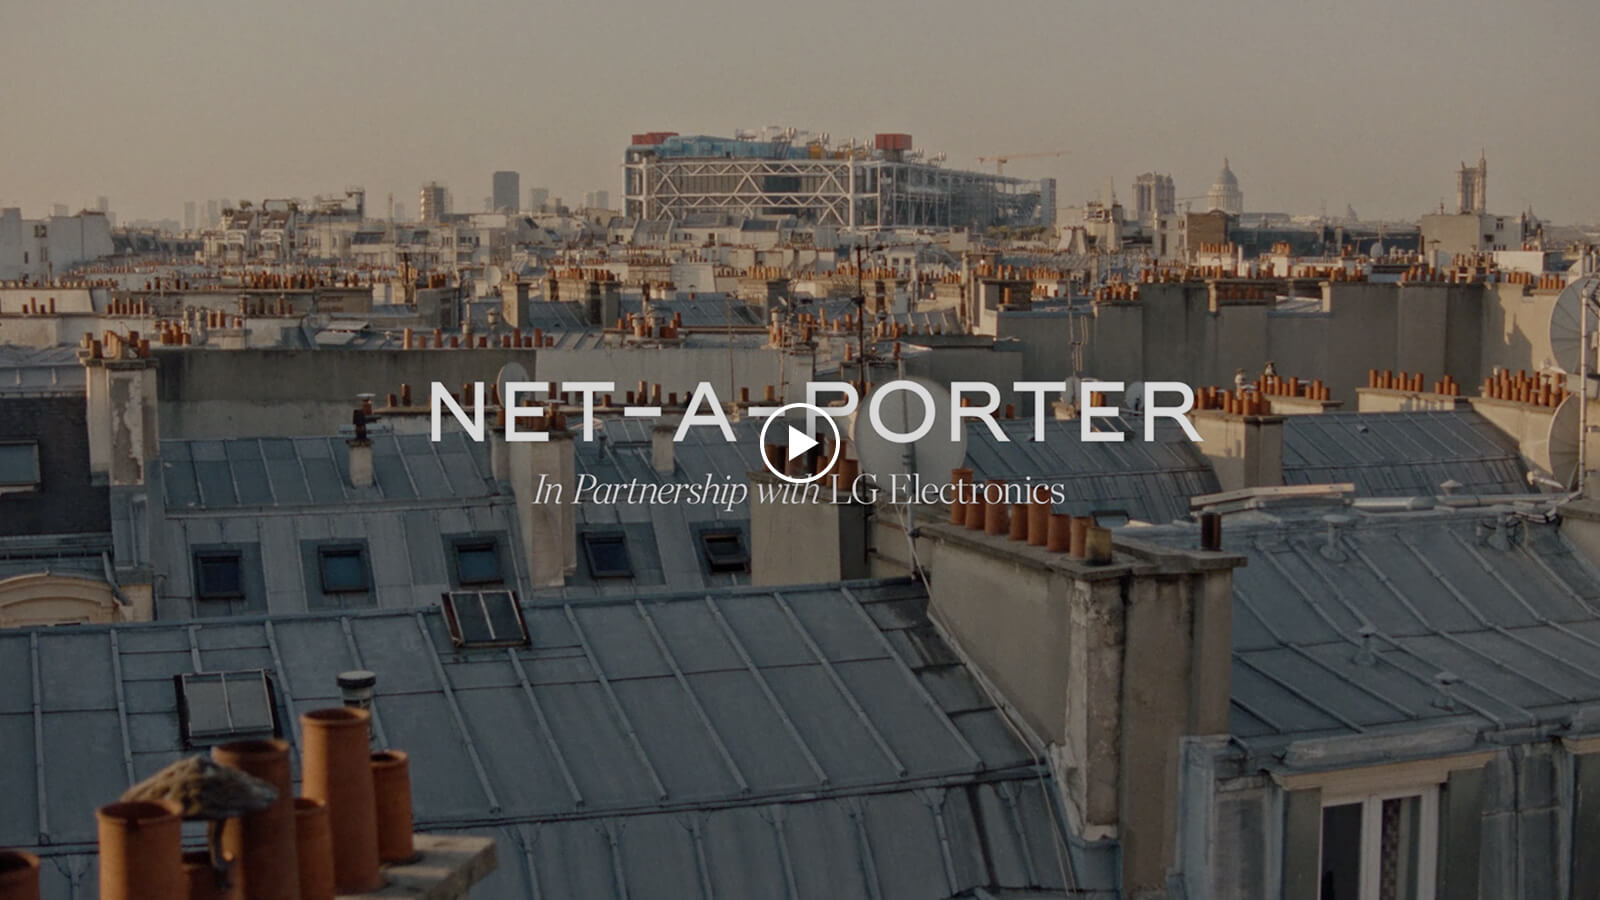 Videon otsikko 'NET-A-PORTER yhteistyössä LG Electronicsin kanssa' kirjoitetaan Euroopan taustalla.